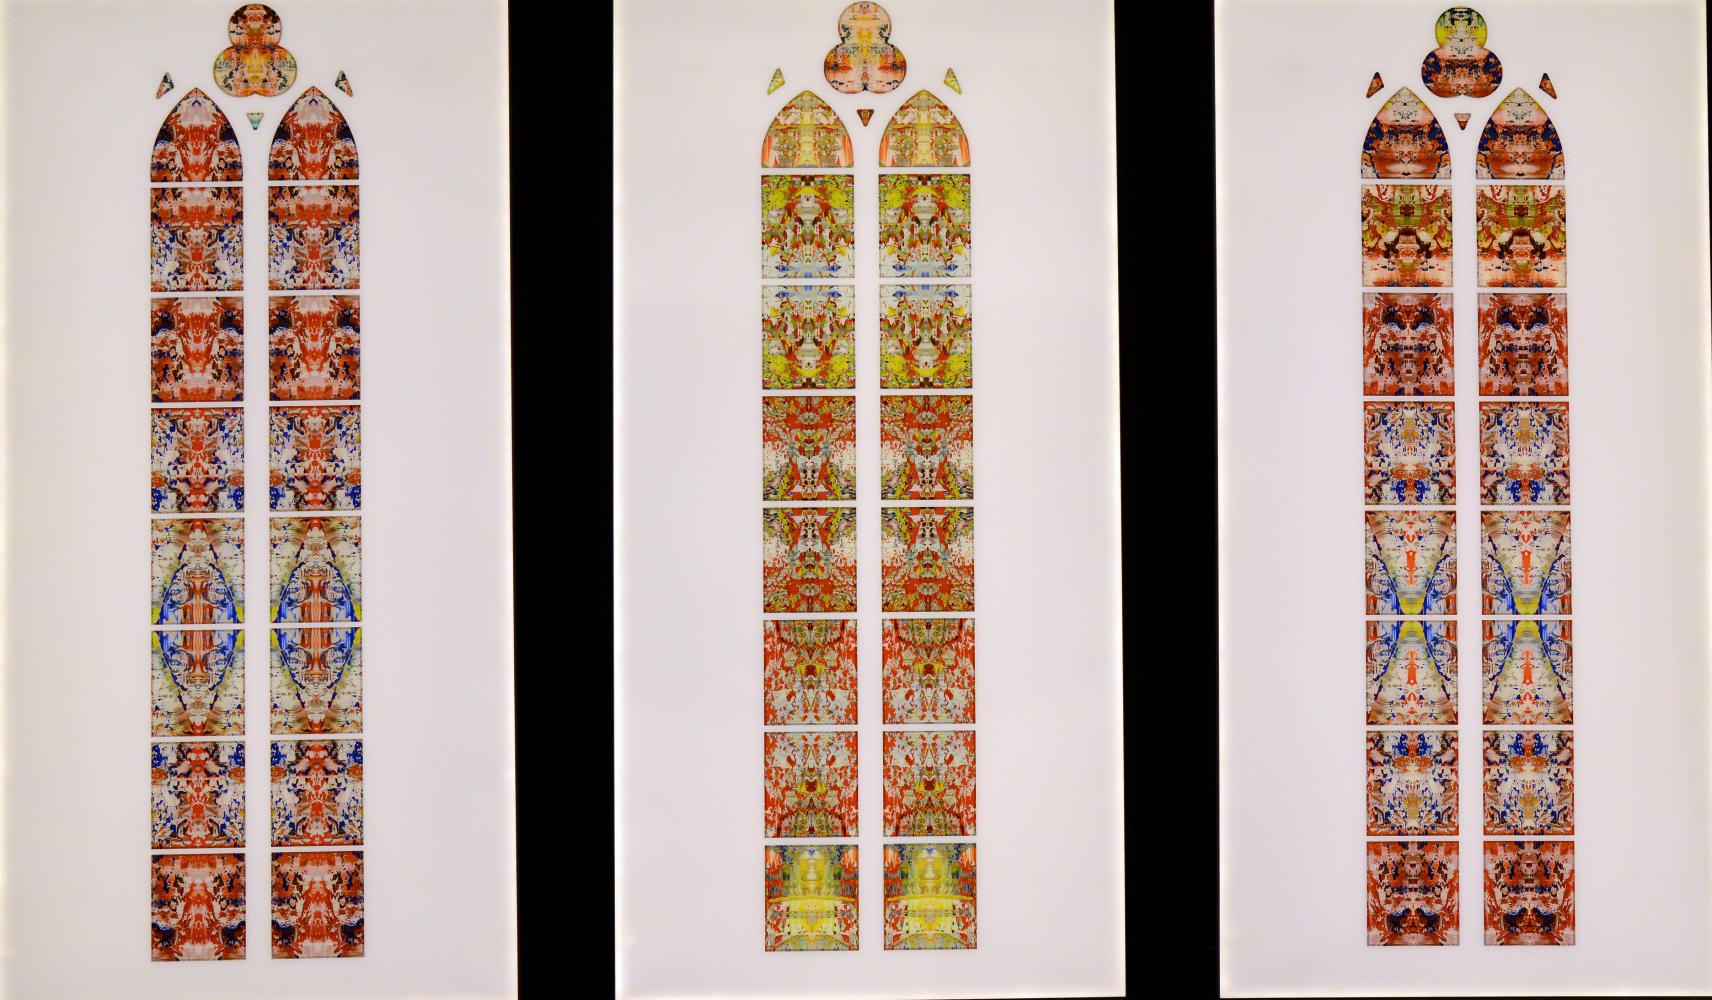  Die Fenster-Entwürfe des weltweit berühmten Künstlers Gerhard Richter für das Benediktinerkloster im saarländischen Tholey 